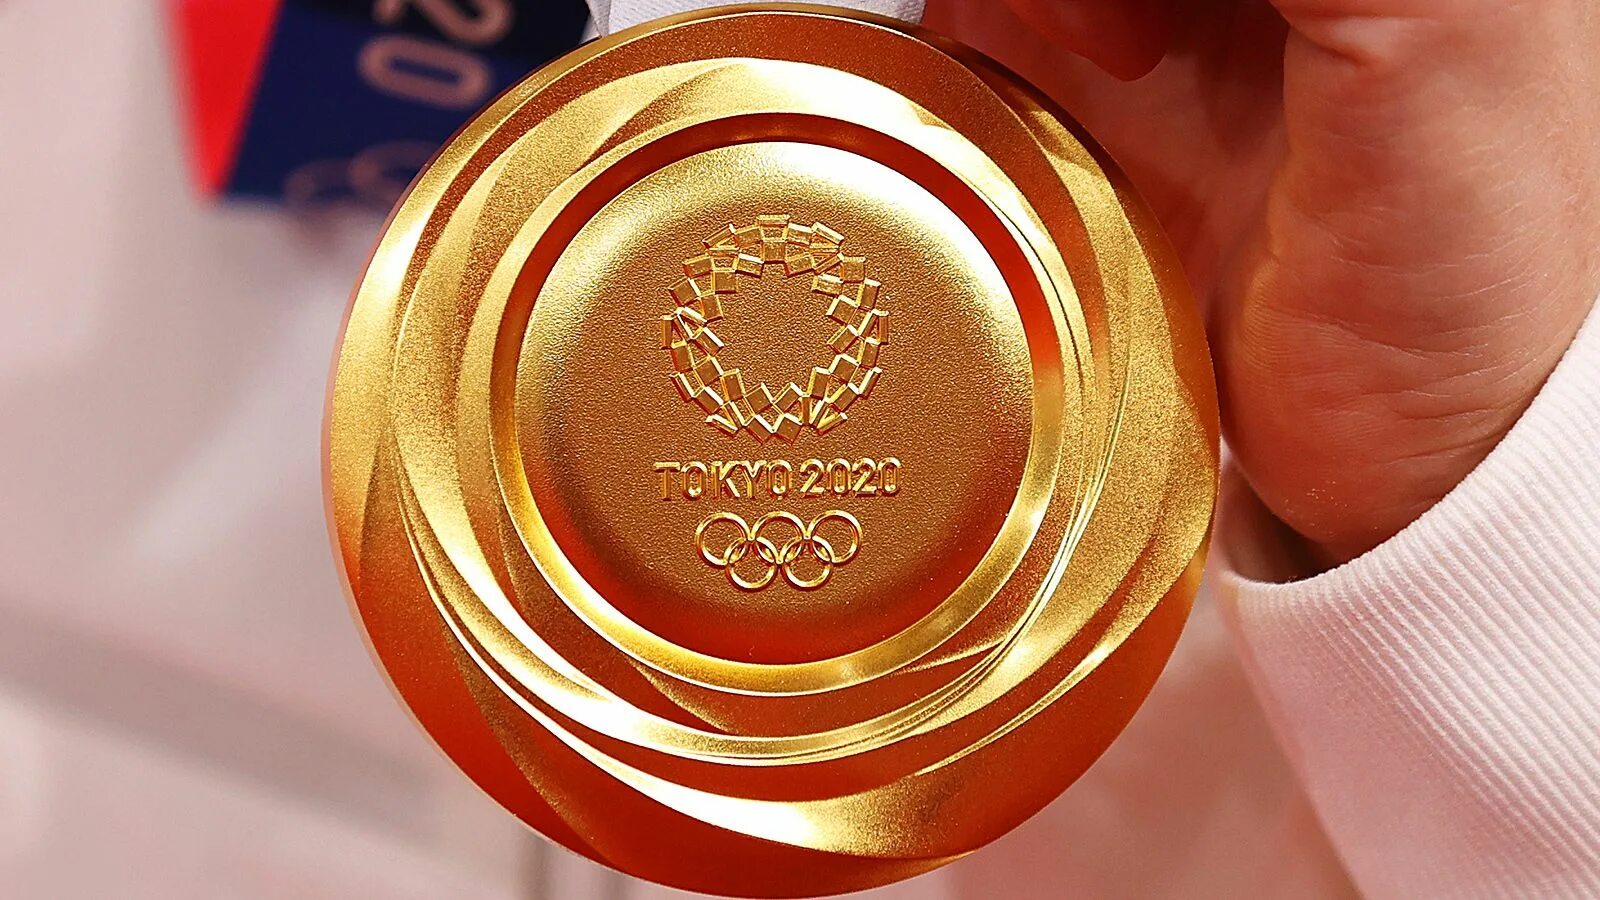 Вторая золотая медаль. Золотая медаль. Золотая Олимпийская медаль. Золотая медаль 2022. Золотая Олимпийская медаль 2022.